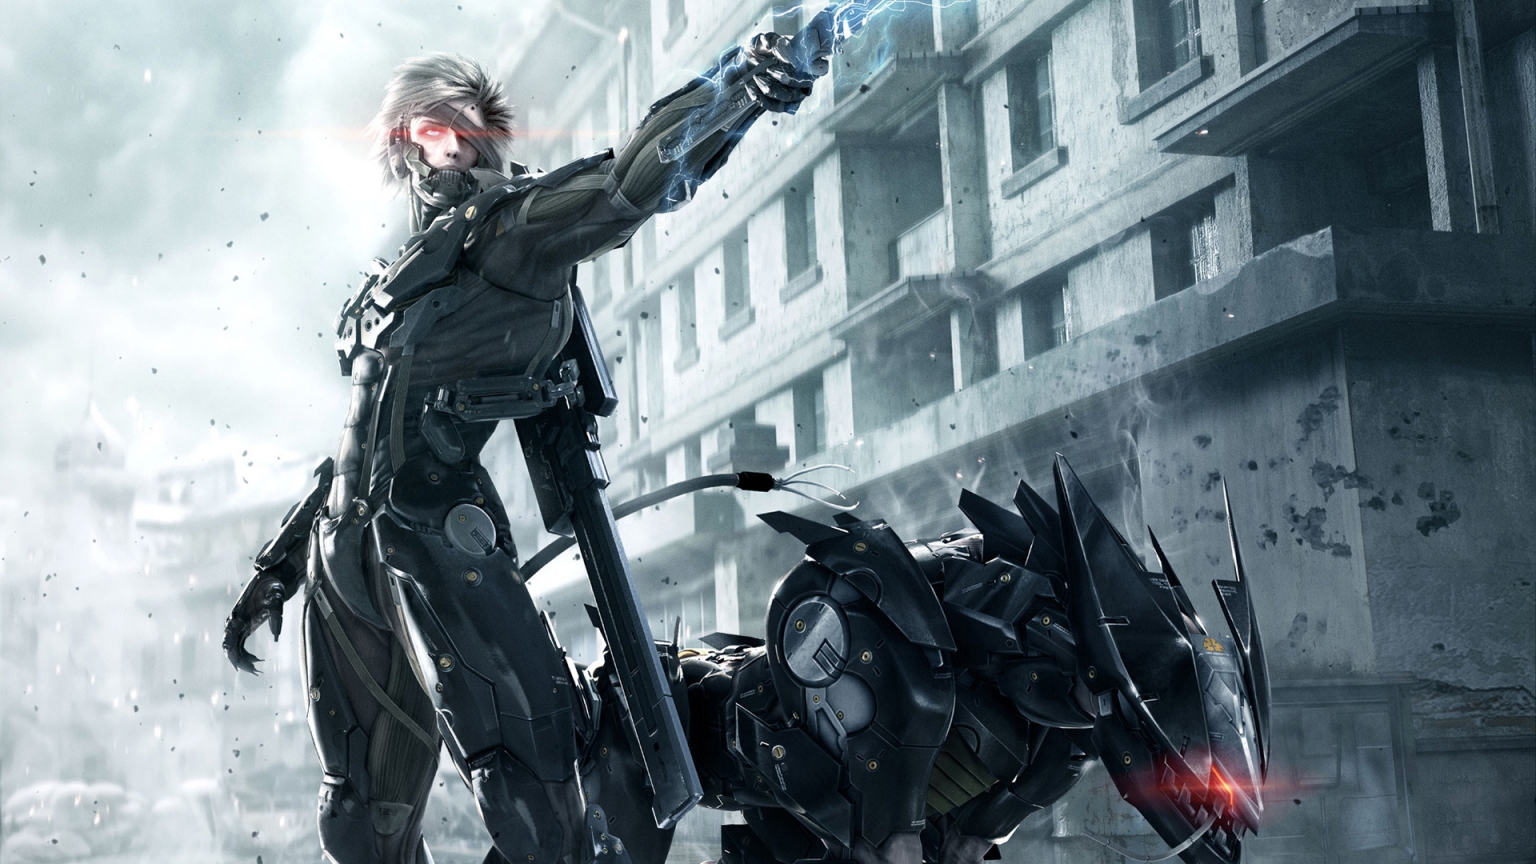 Metal Gear Rising Revengeance for 1536 x 864 HDTV resolution